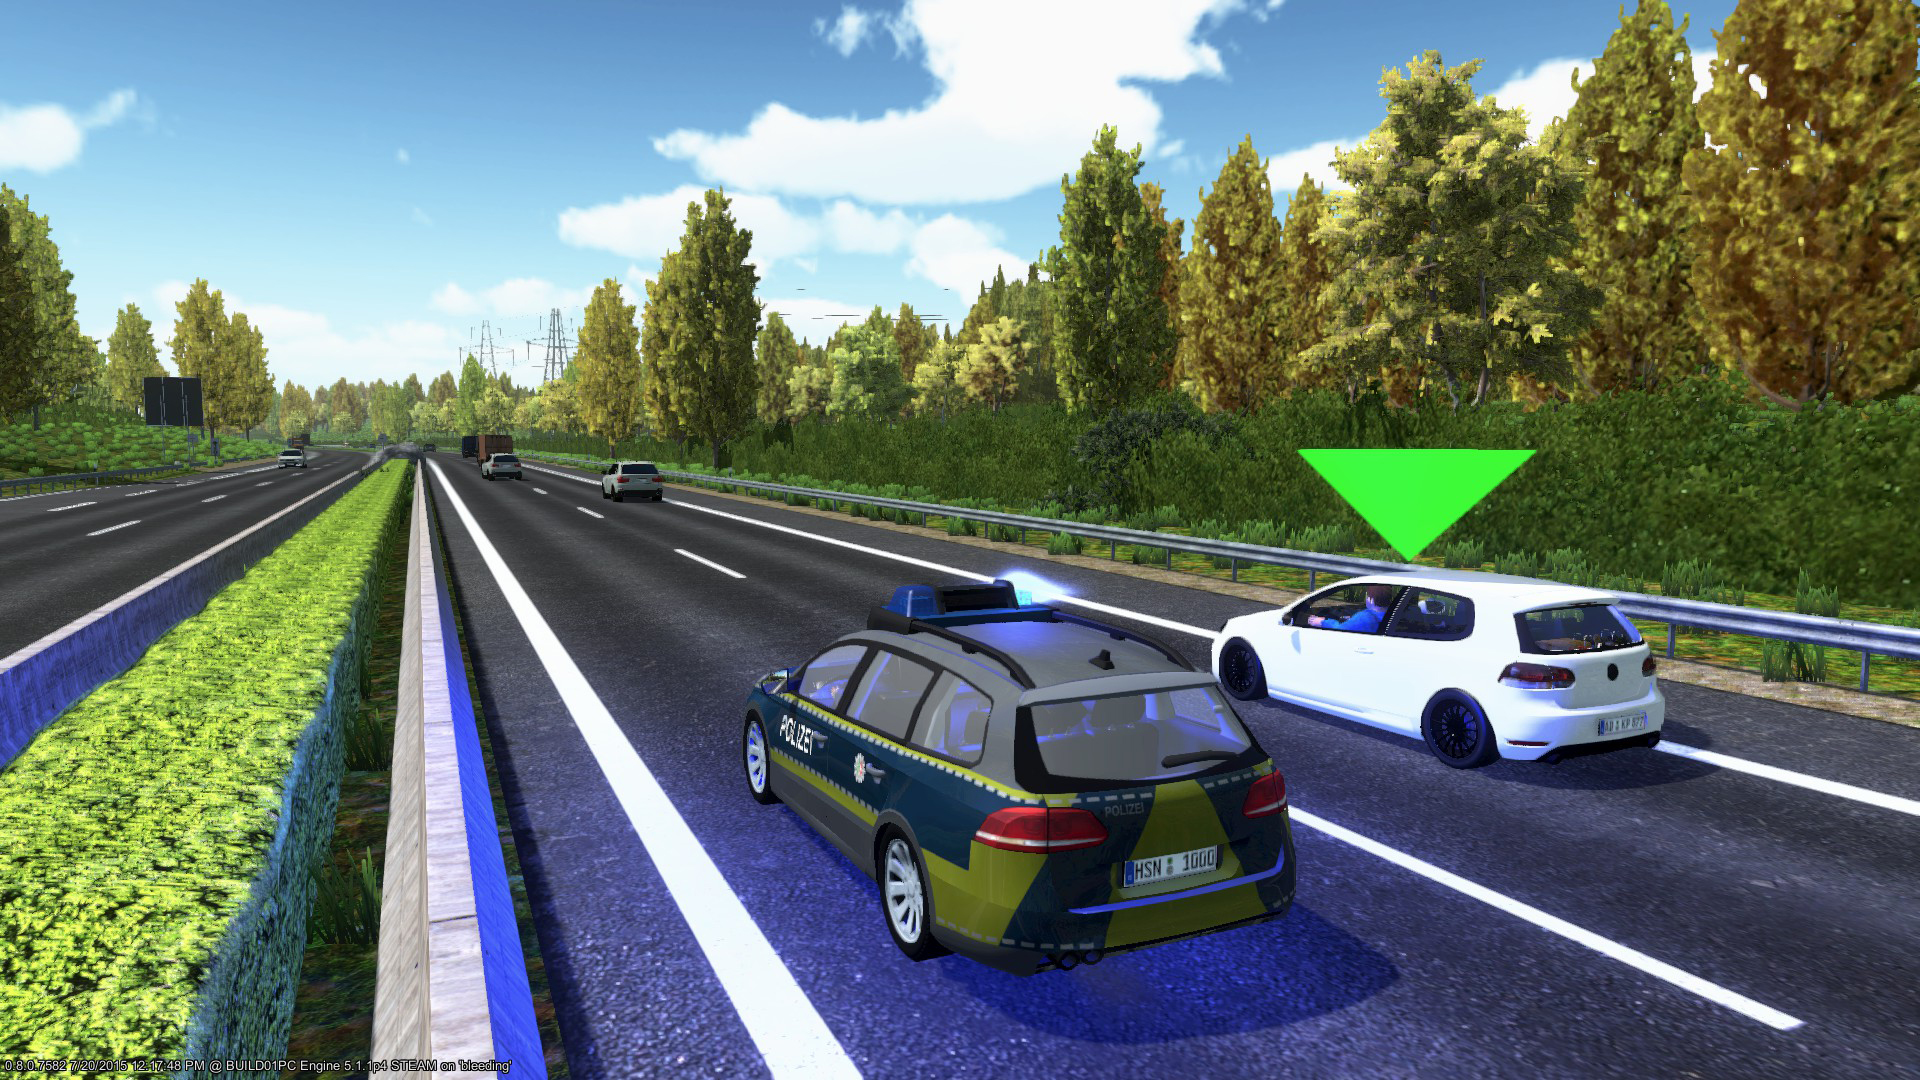 Save 50% on Autobahn Police Simulator on Steam